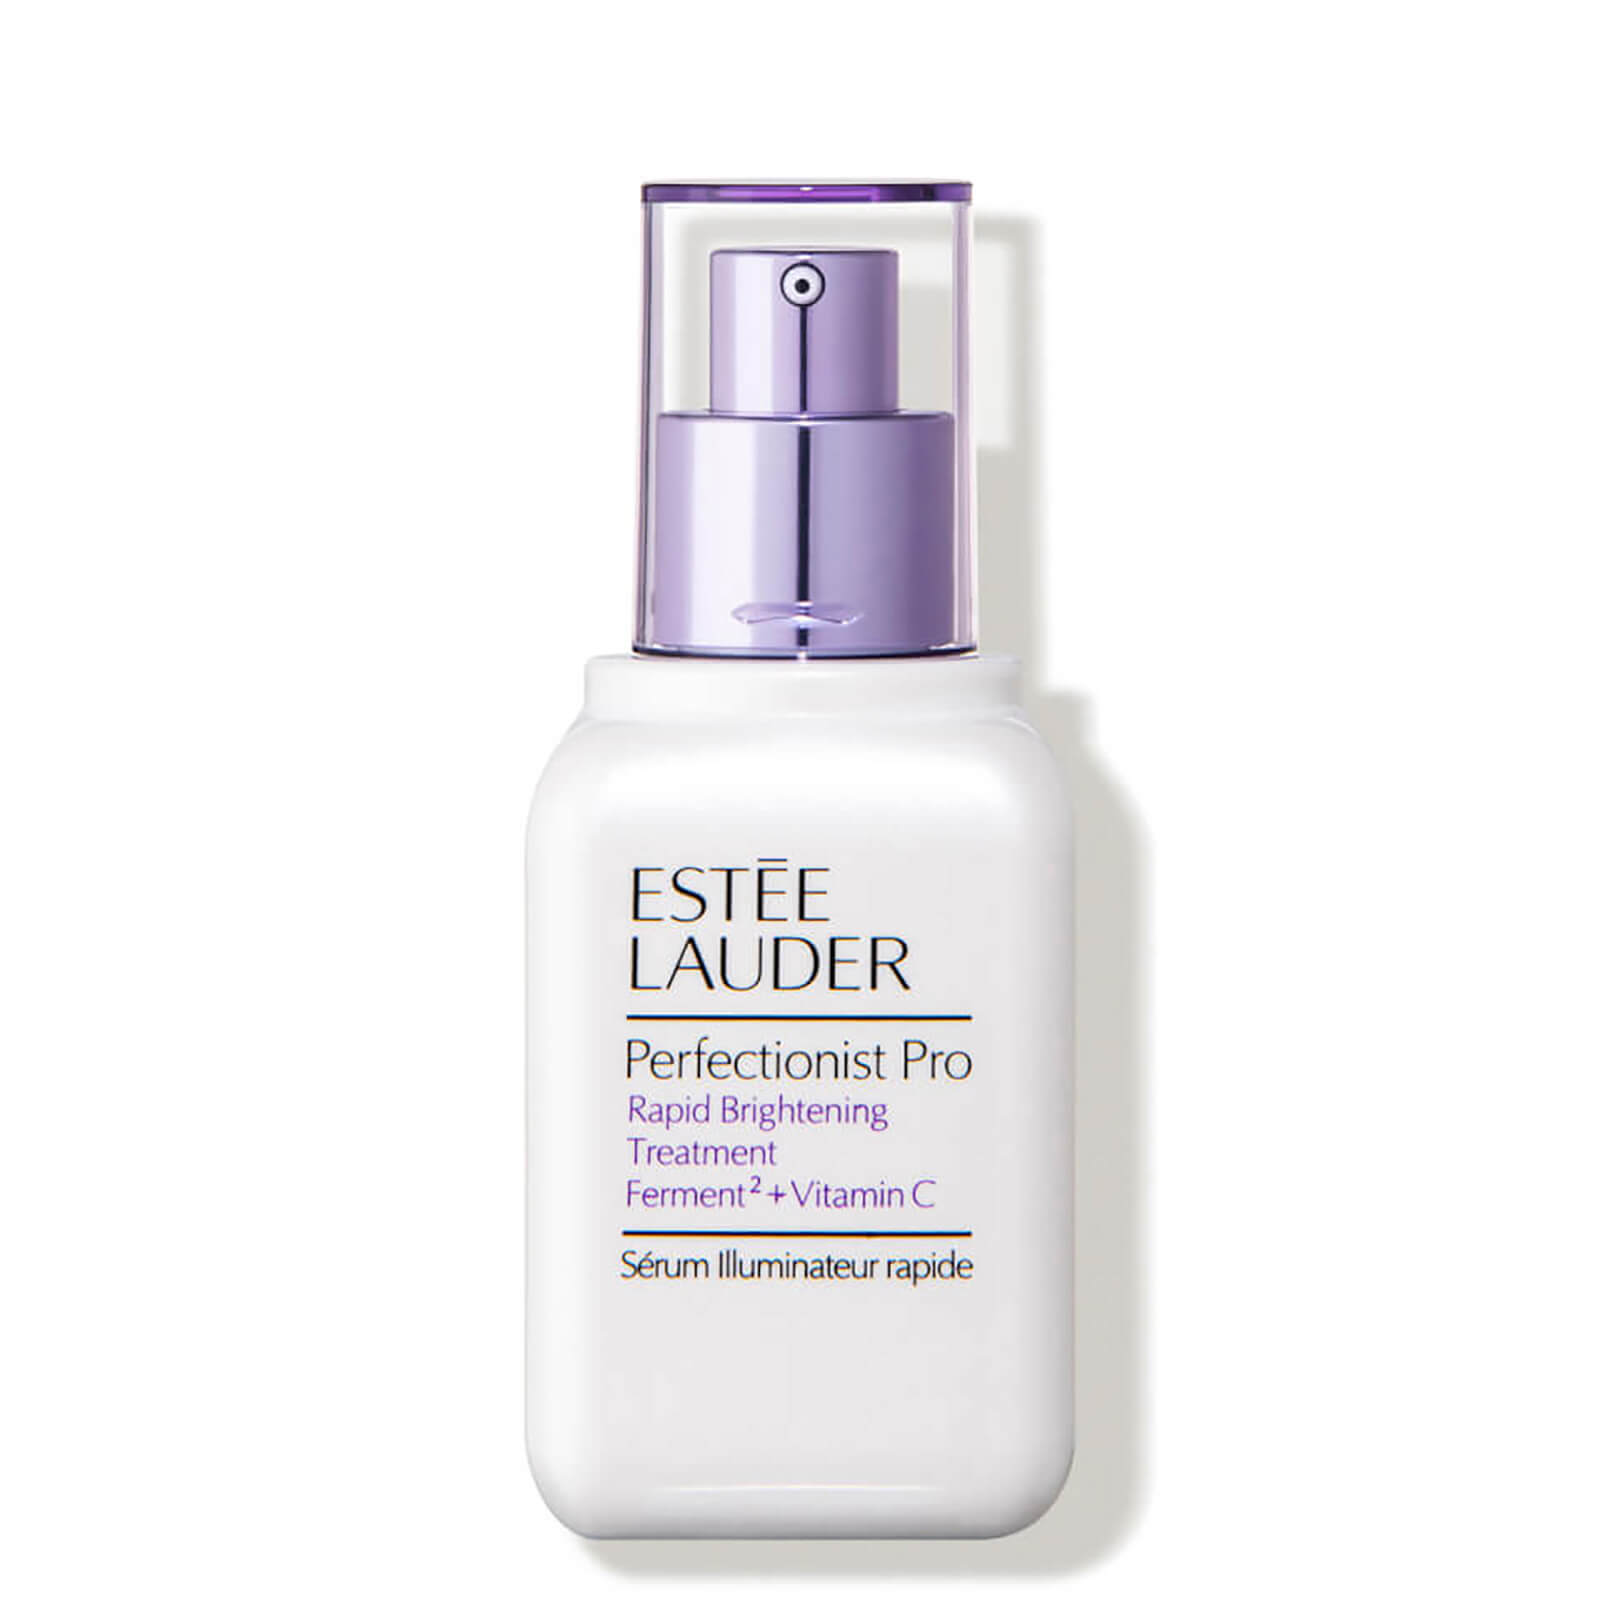 Estée Lauder Perfectionist Pro Rapid Brightening Treatment with Ferment² + Vitamin C (Various Sizes) - 1.7 oz